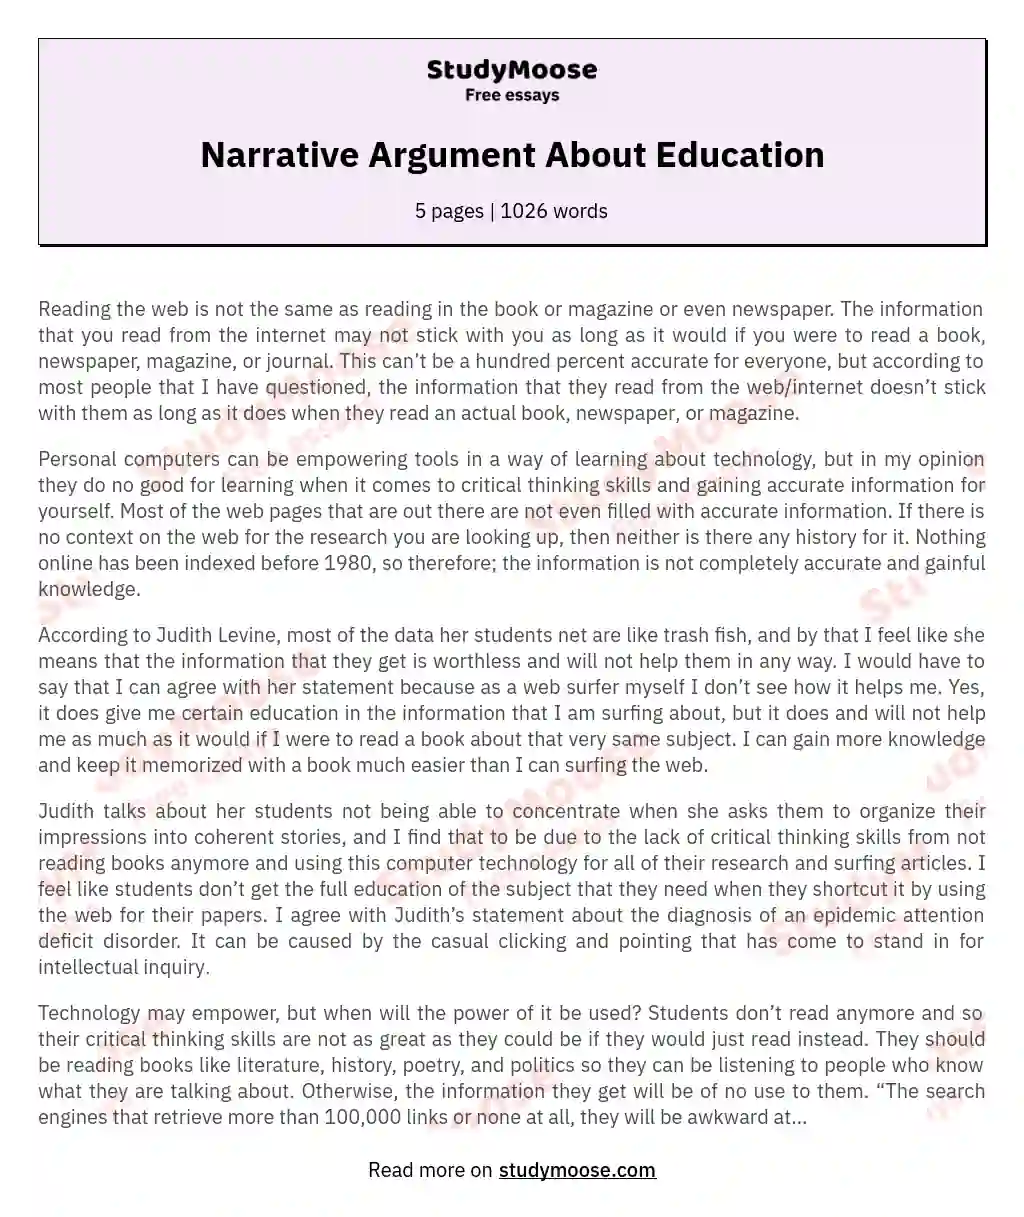 Narrative Argument About Education essay